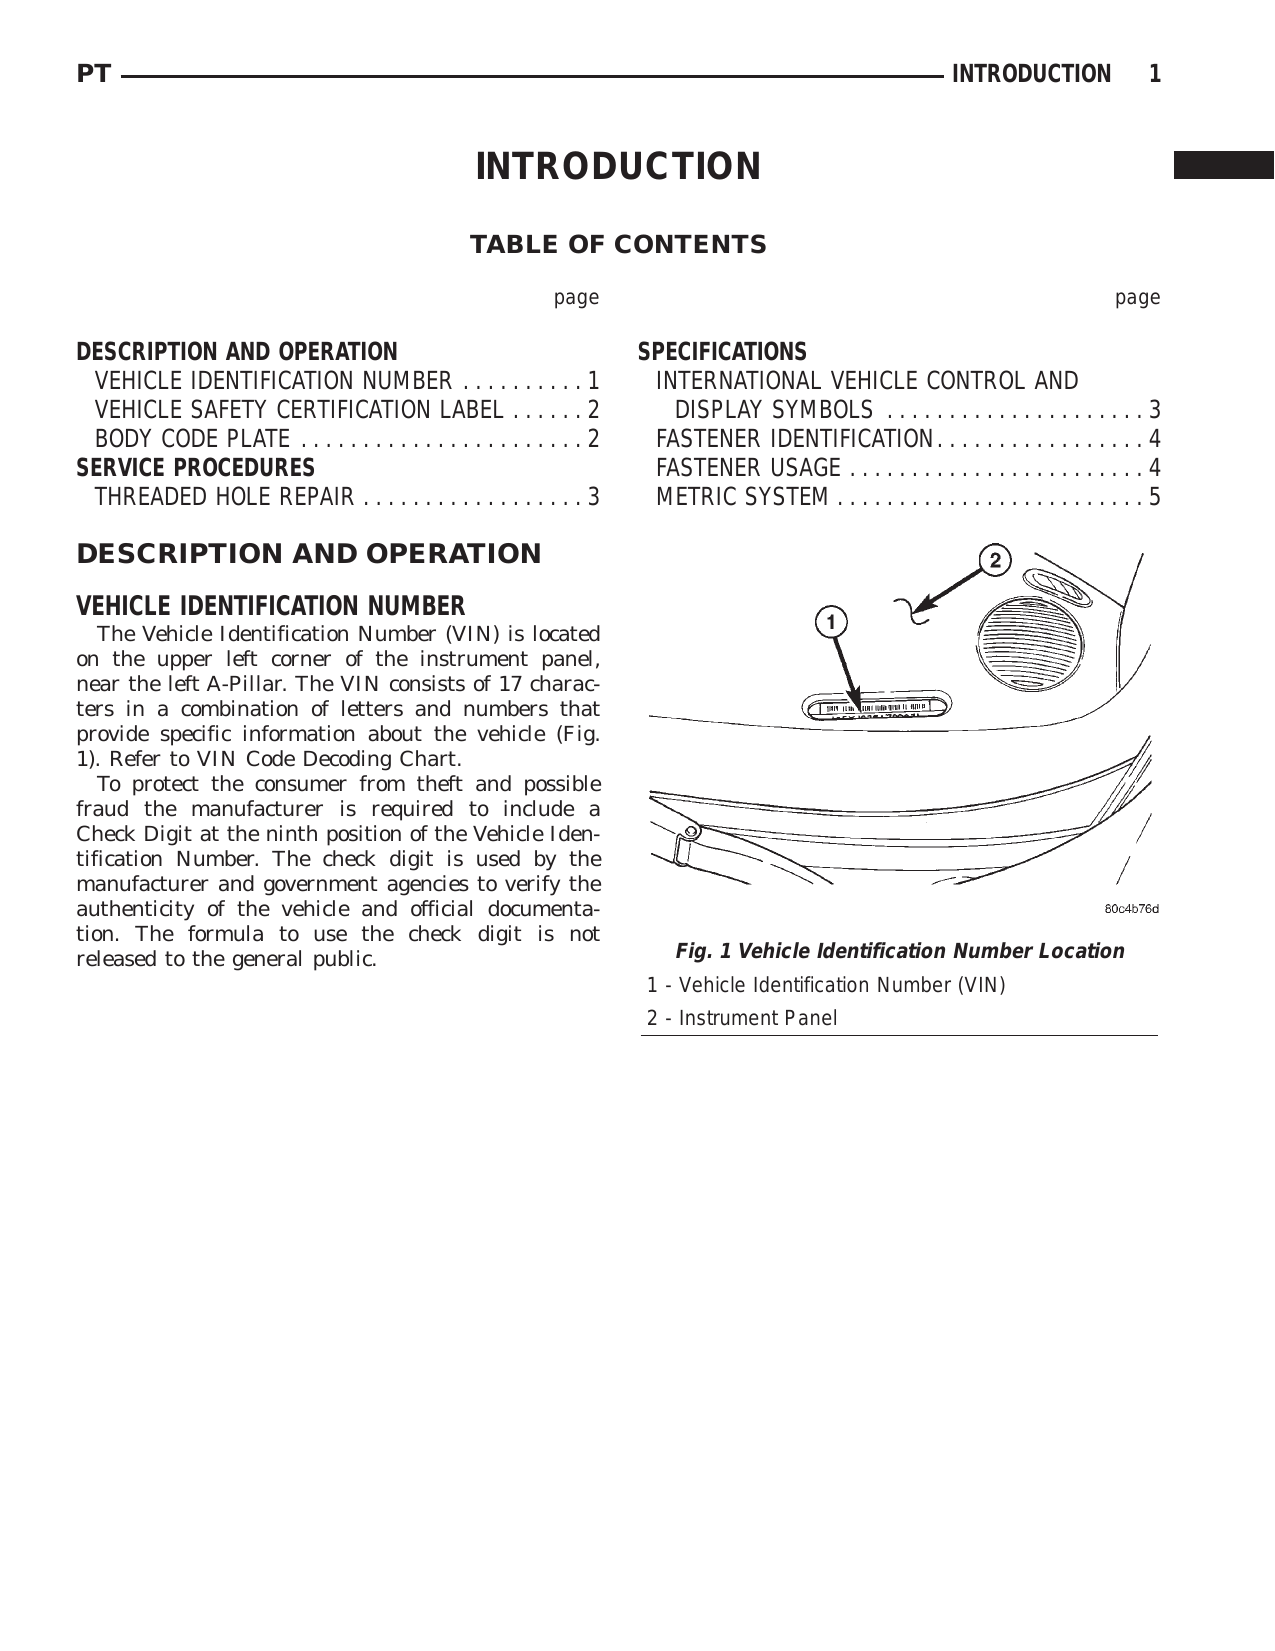 2001 PT Cruiser repair manual Preview image 2